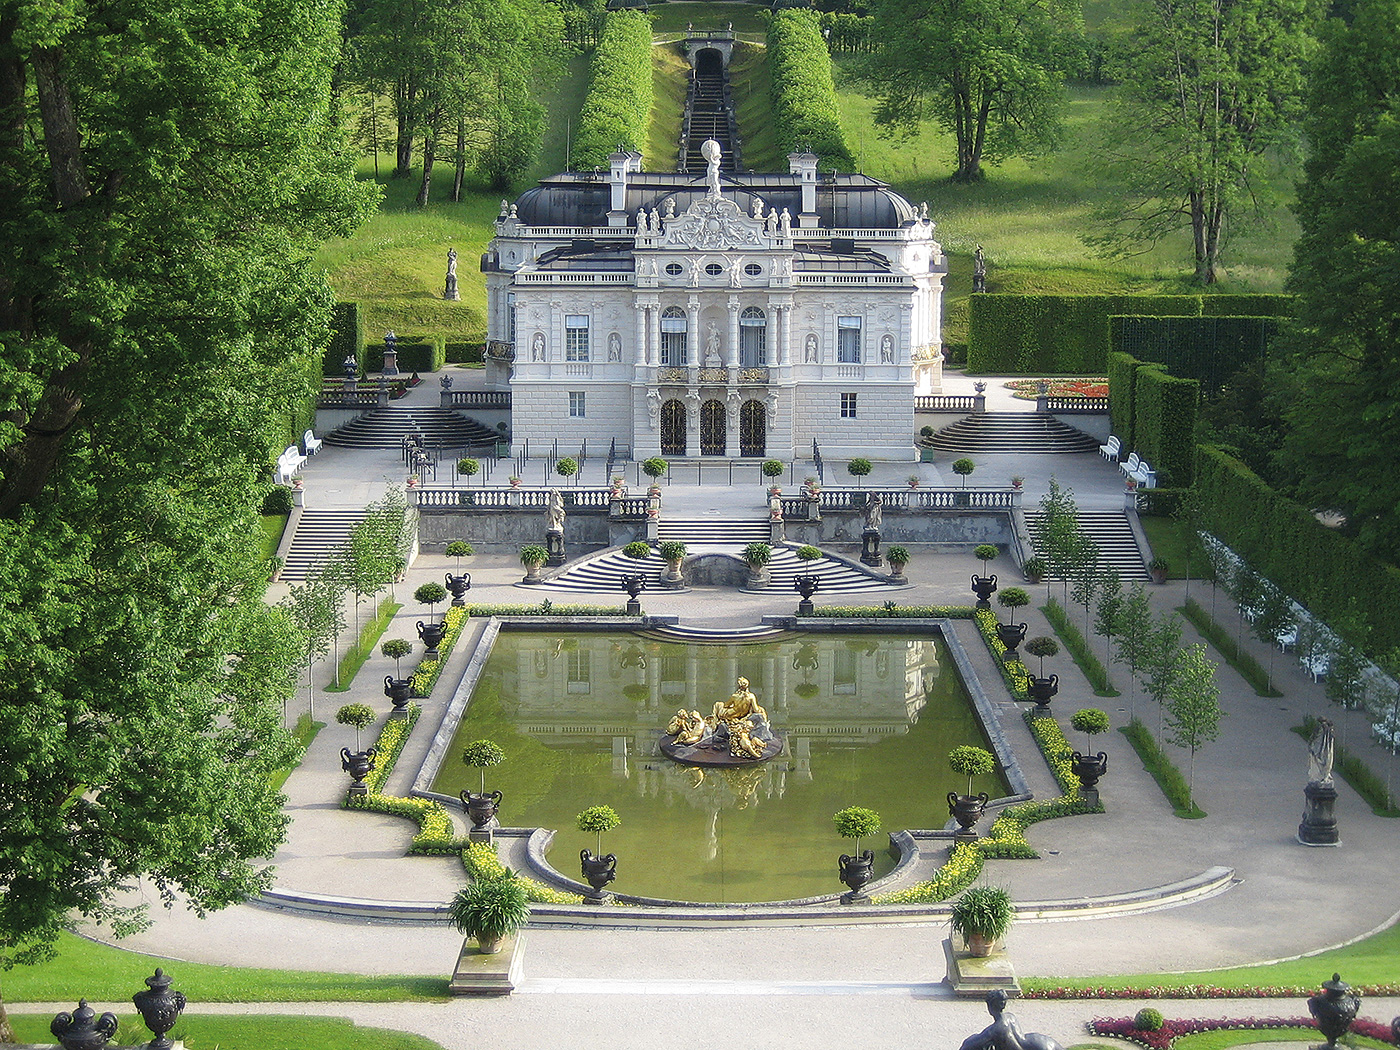 Pe urmele Regelui Nebun: splendidele castele ale lui Ludwig al II-lea